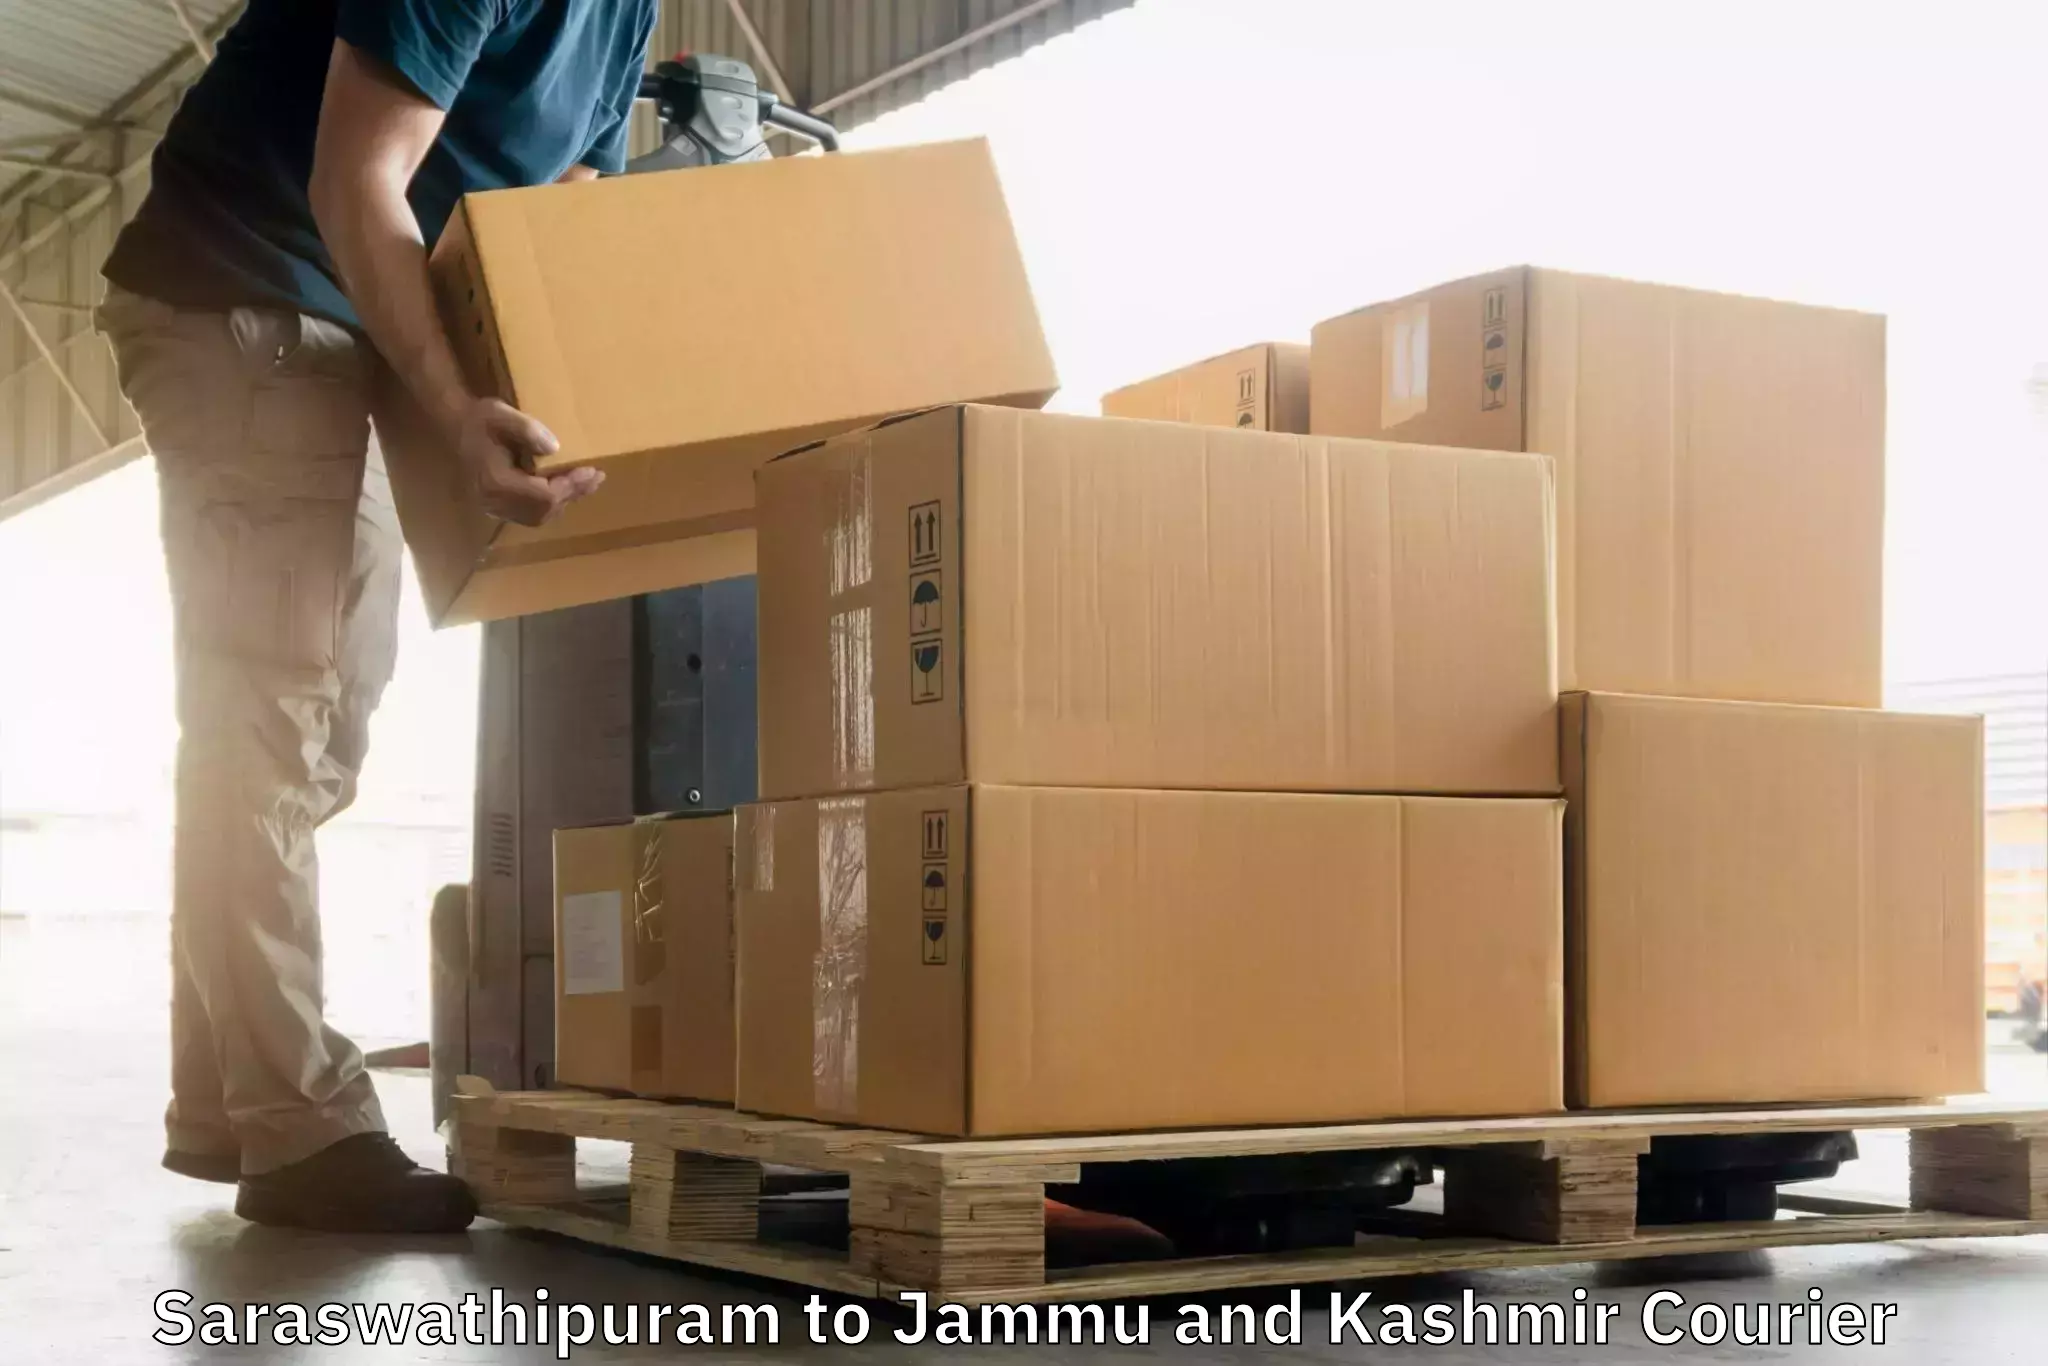 Global parcel delivery Saraswathipuram to Anantnag